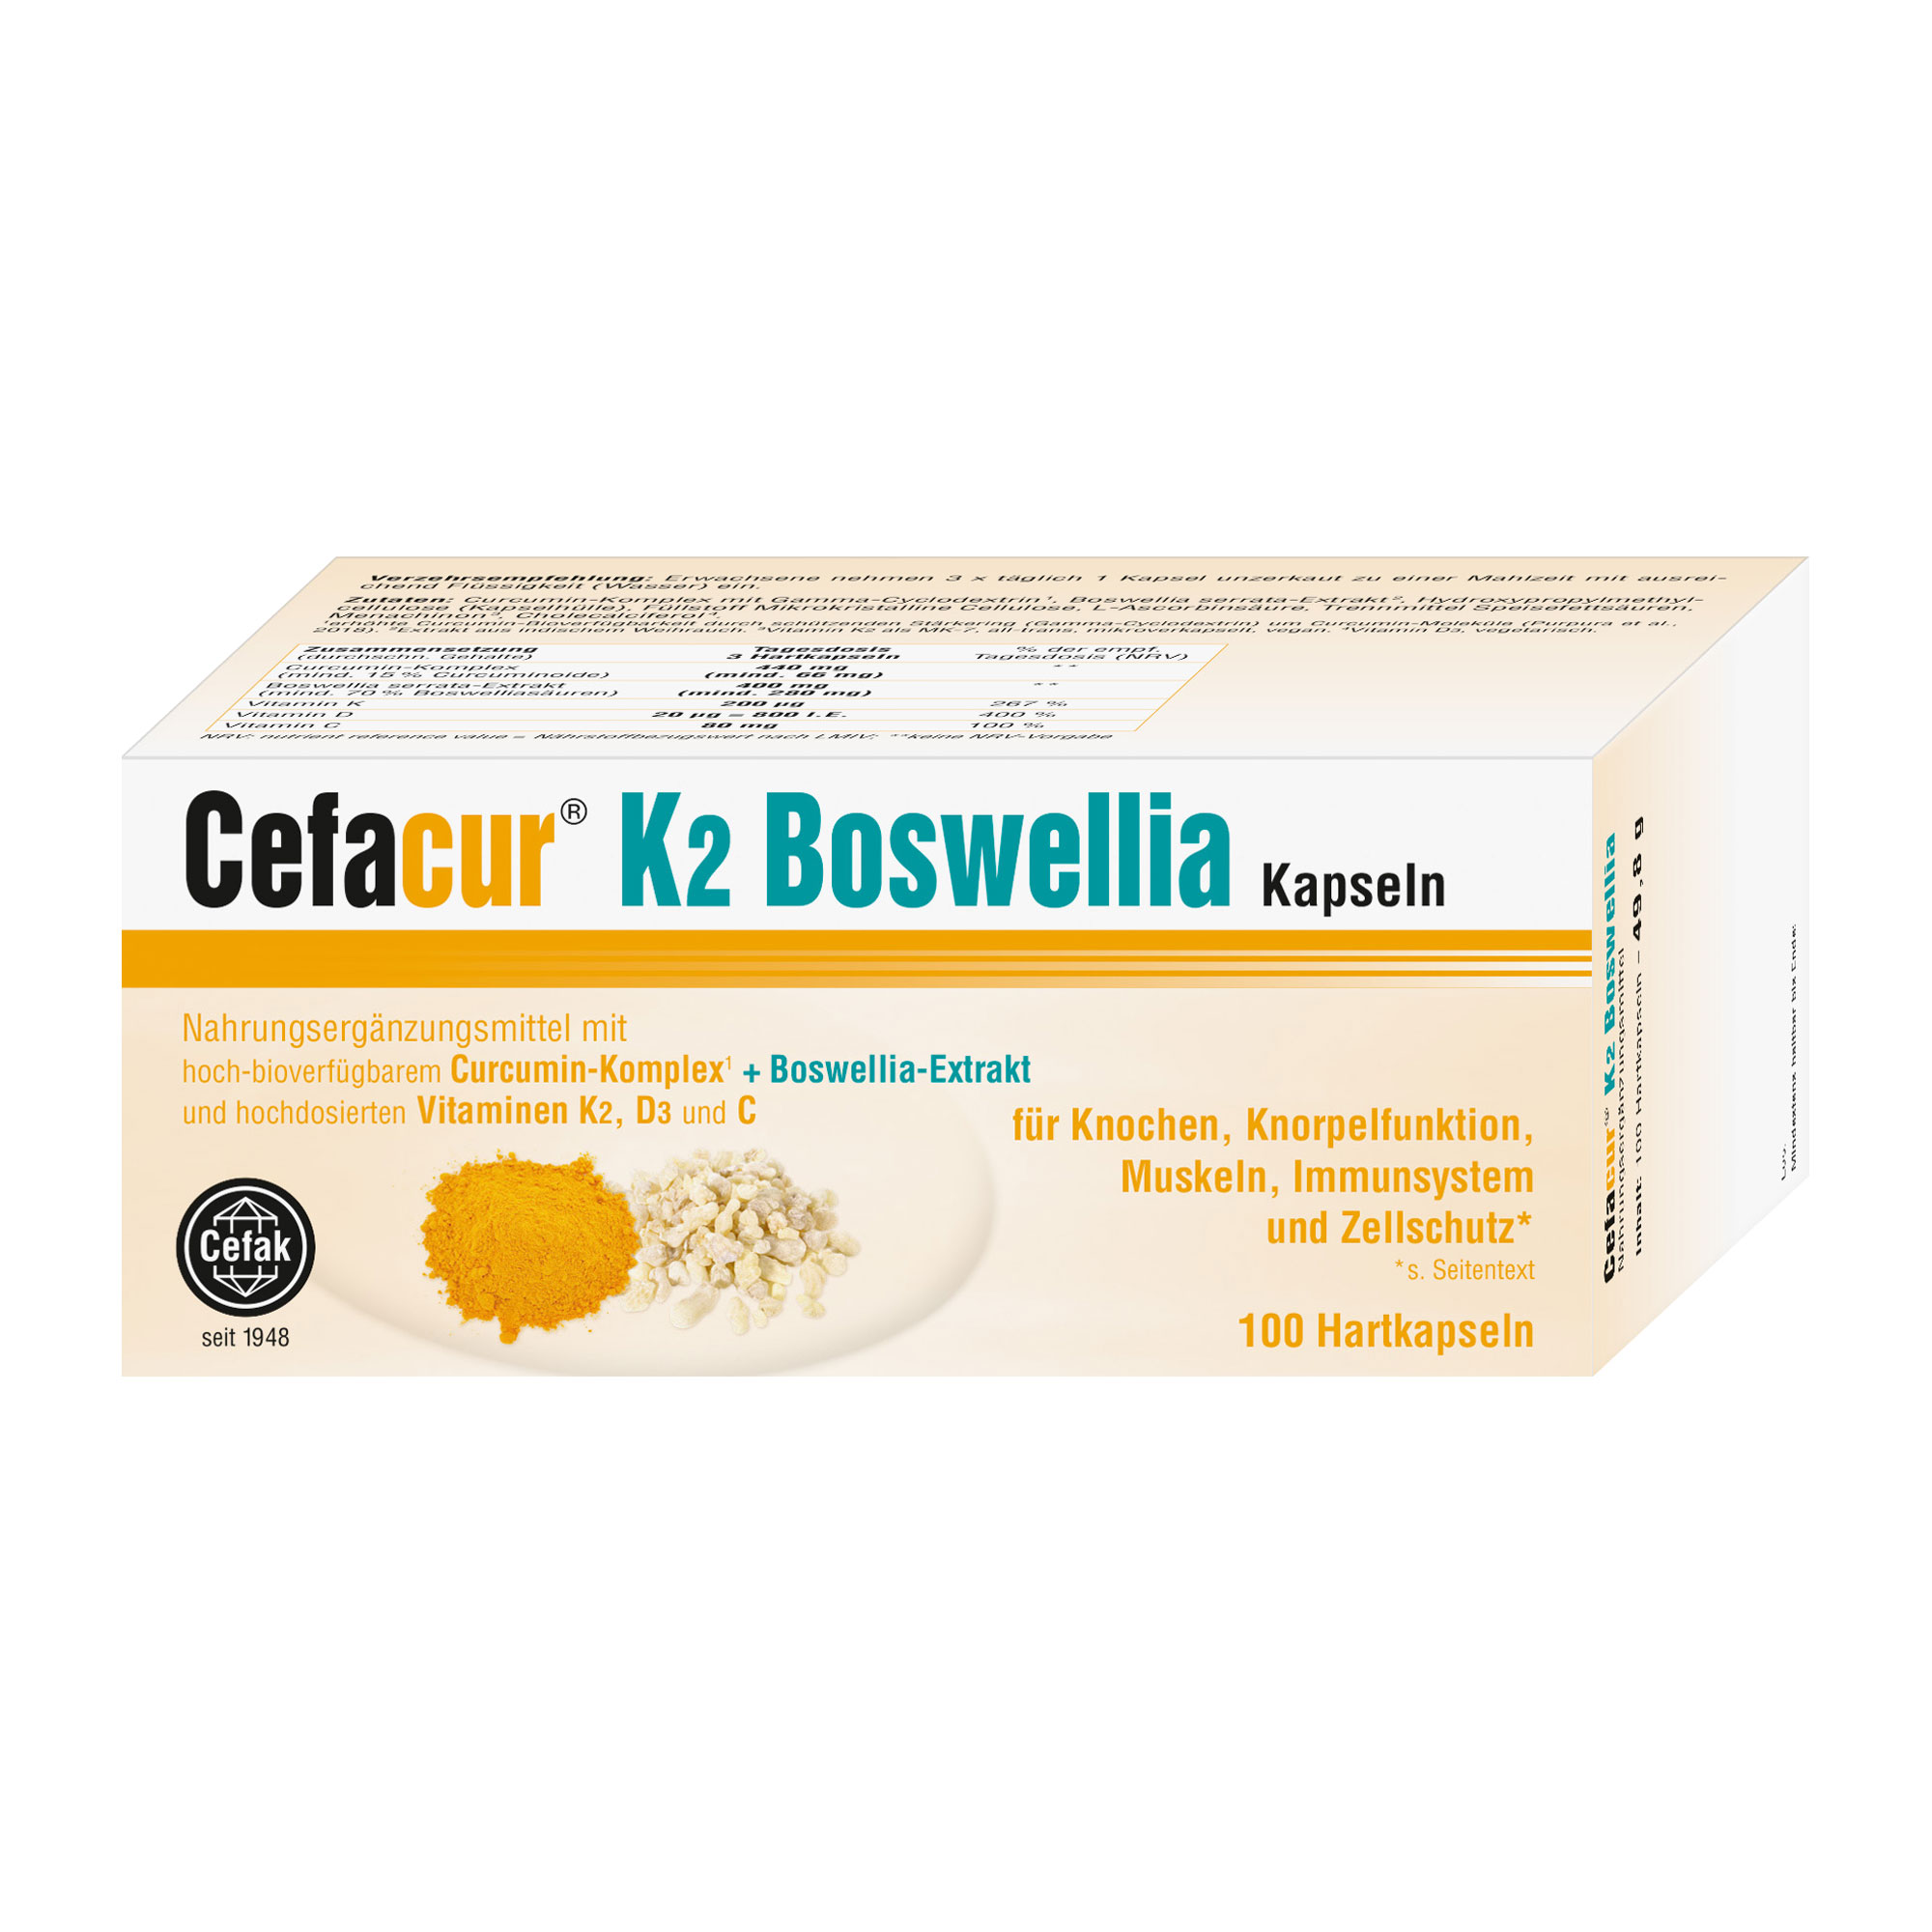 Nahrungsergänzungsmittel mit hoch-bioverfügbarem Curcumin-Komplex, Boswellia-Extrakt und hochdosierten Vitaminen K2, D3 und C.